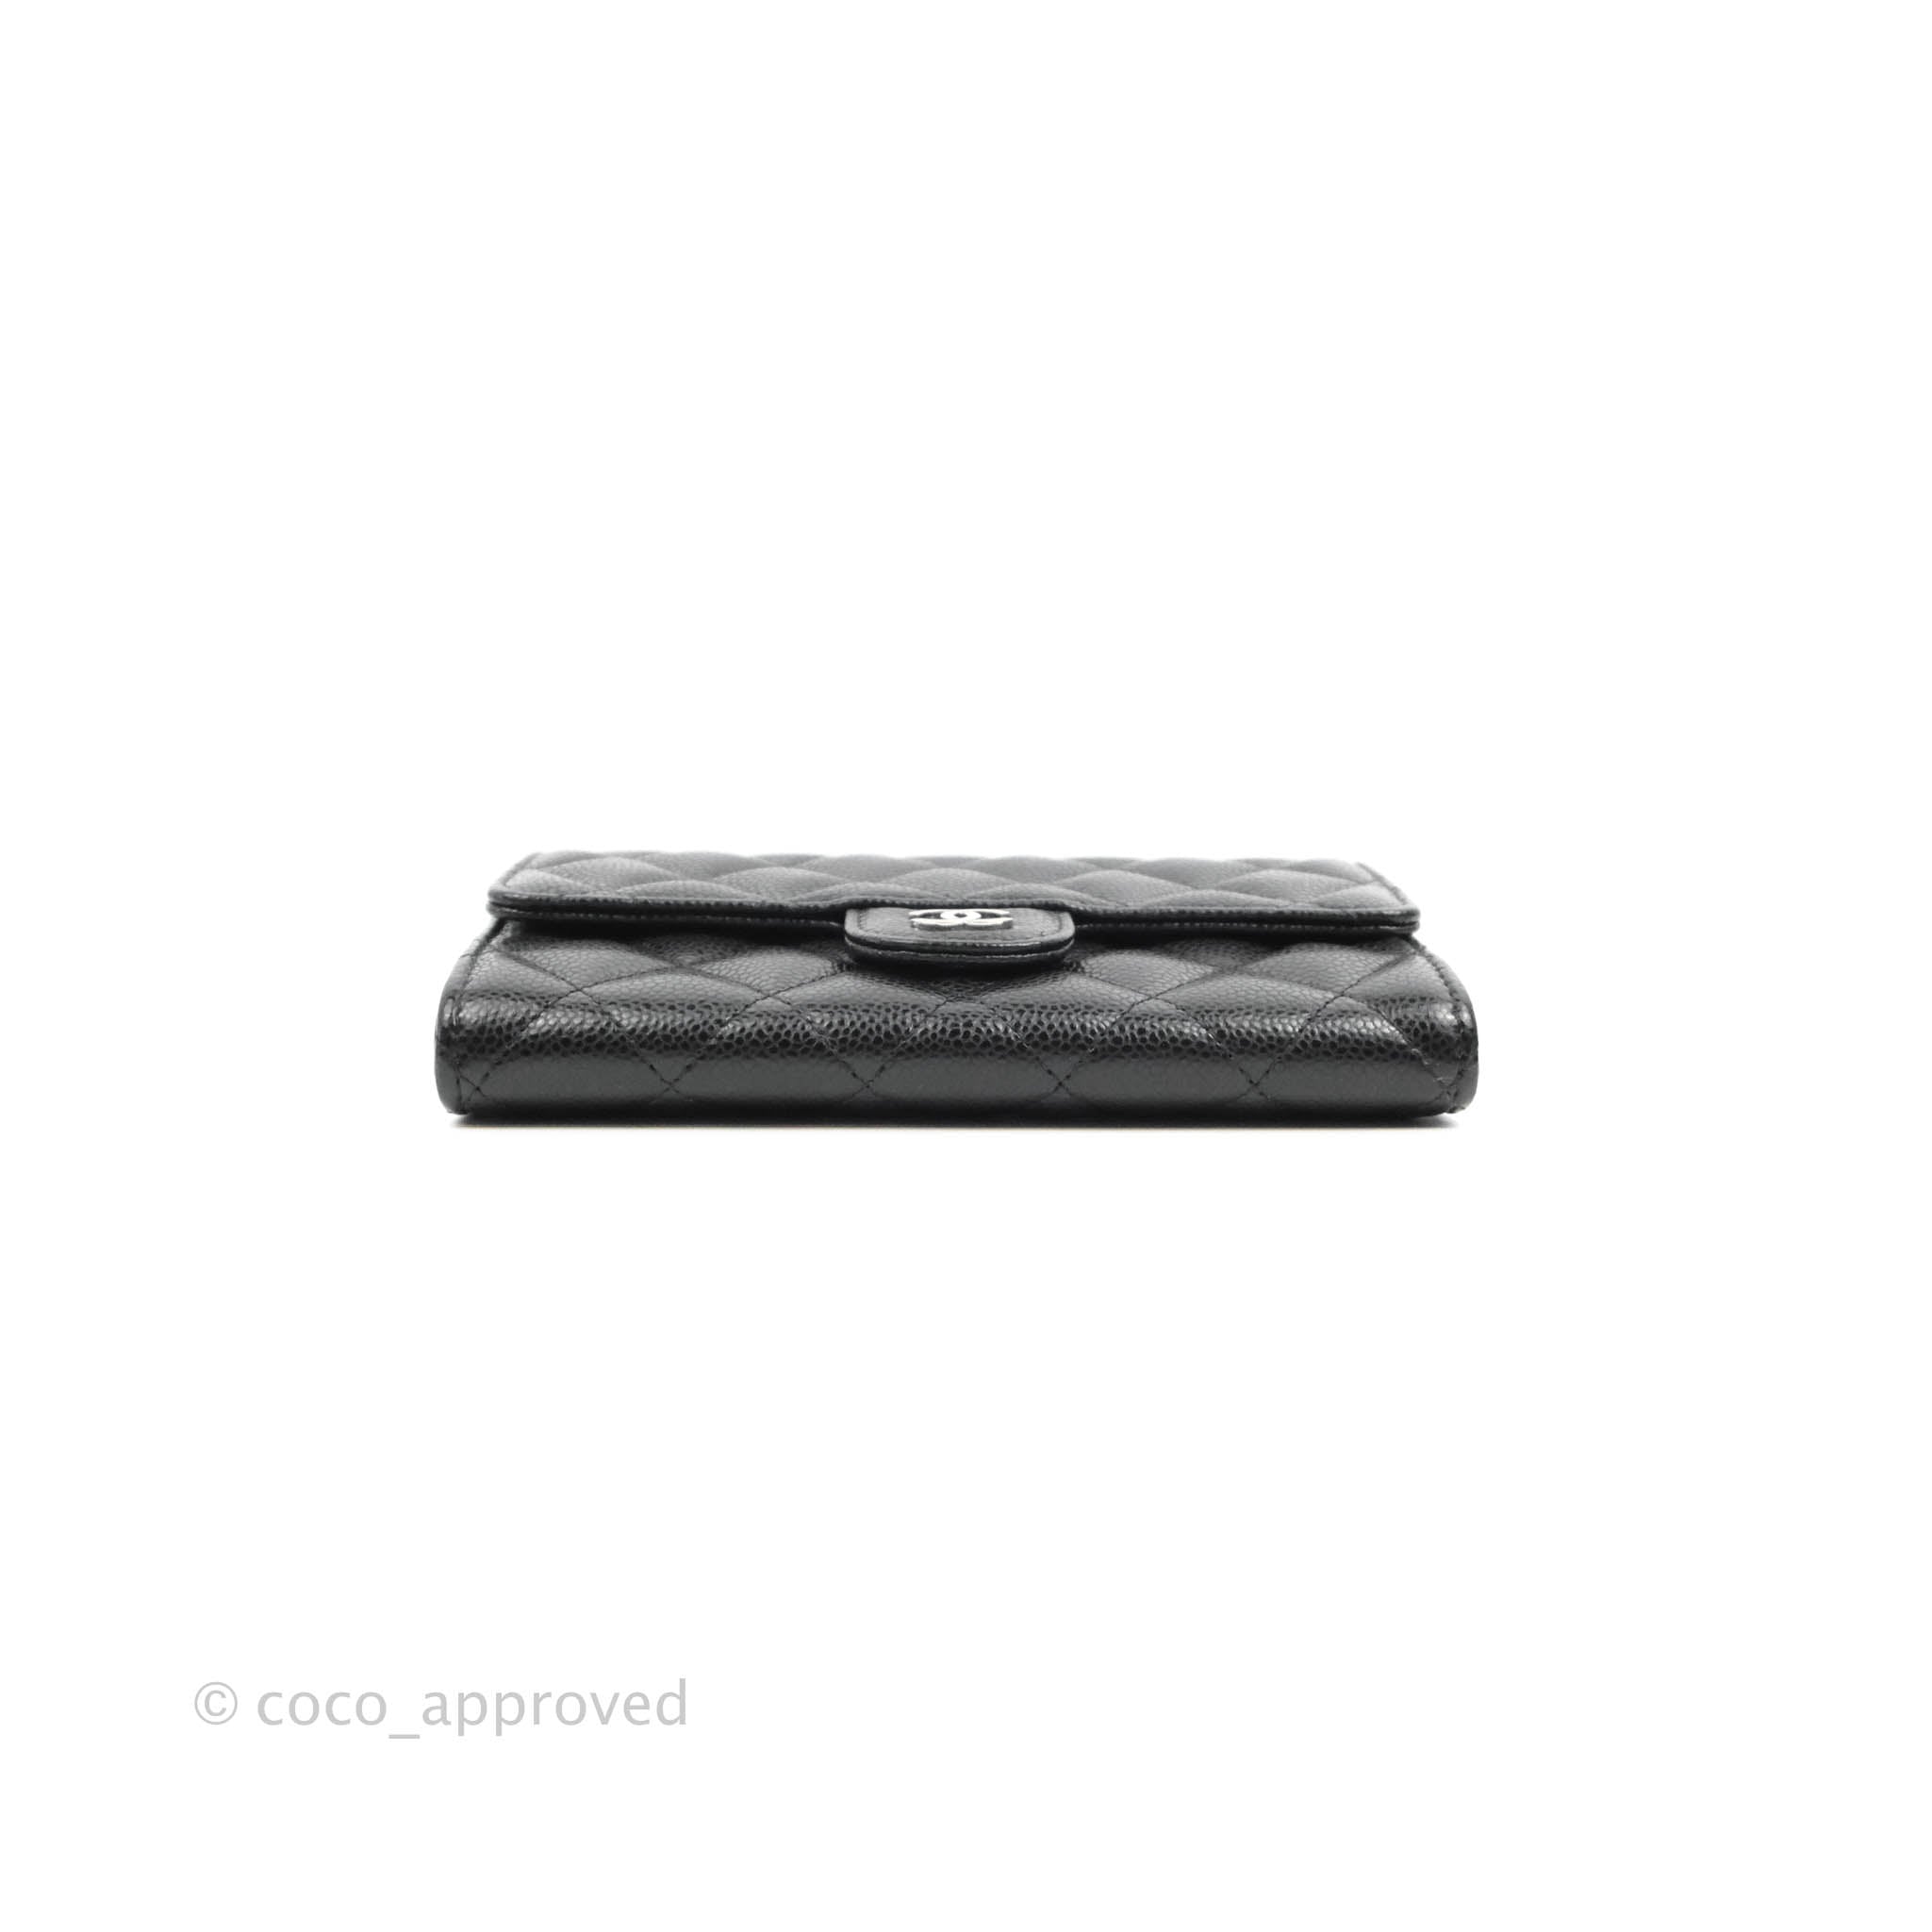 CHANEL Caviar Quilted Medium Zip Around Wallet Black 1267515